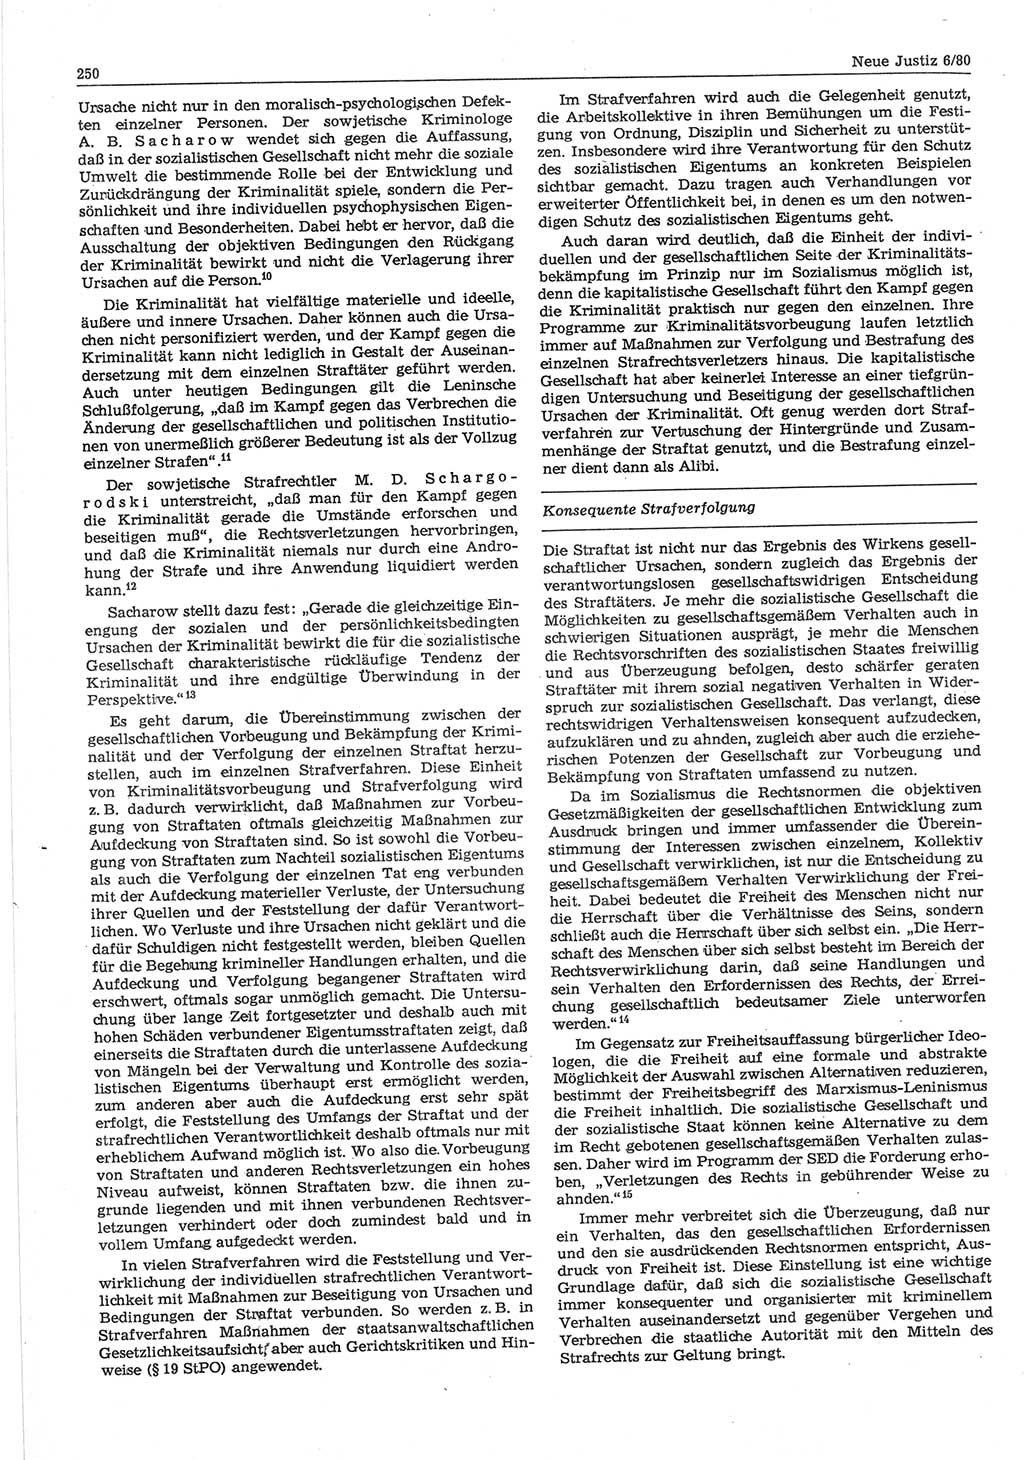 Neue Justiz (NJ), Zeitschrift für sozialistisches Recht und Gesetzlichkeit [Deutsche Demokratische Republik (DDR)], 34. Jahrgang 1980, Seite 250 (NJ DDR 1980, S. 250)